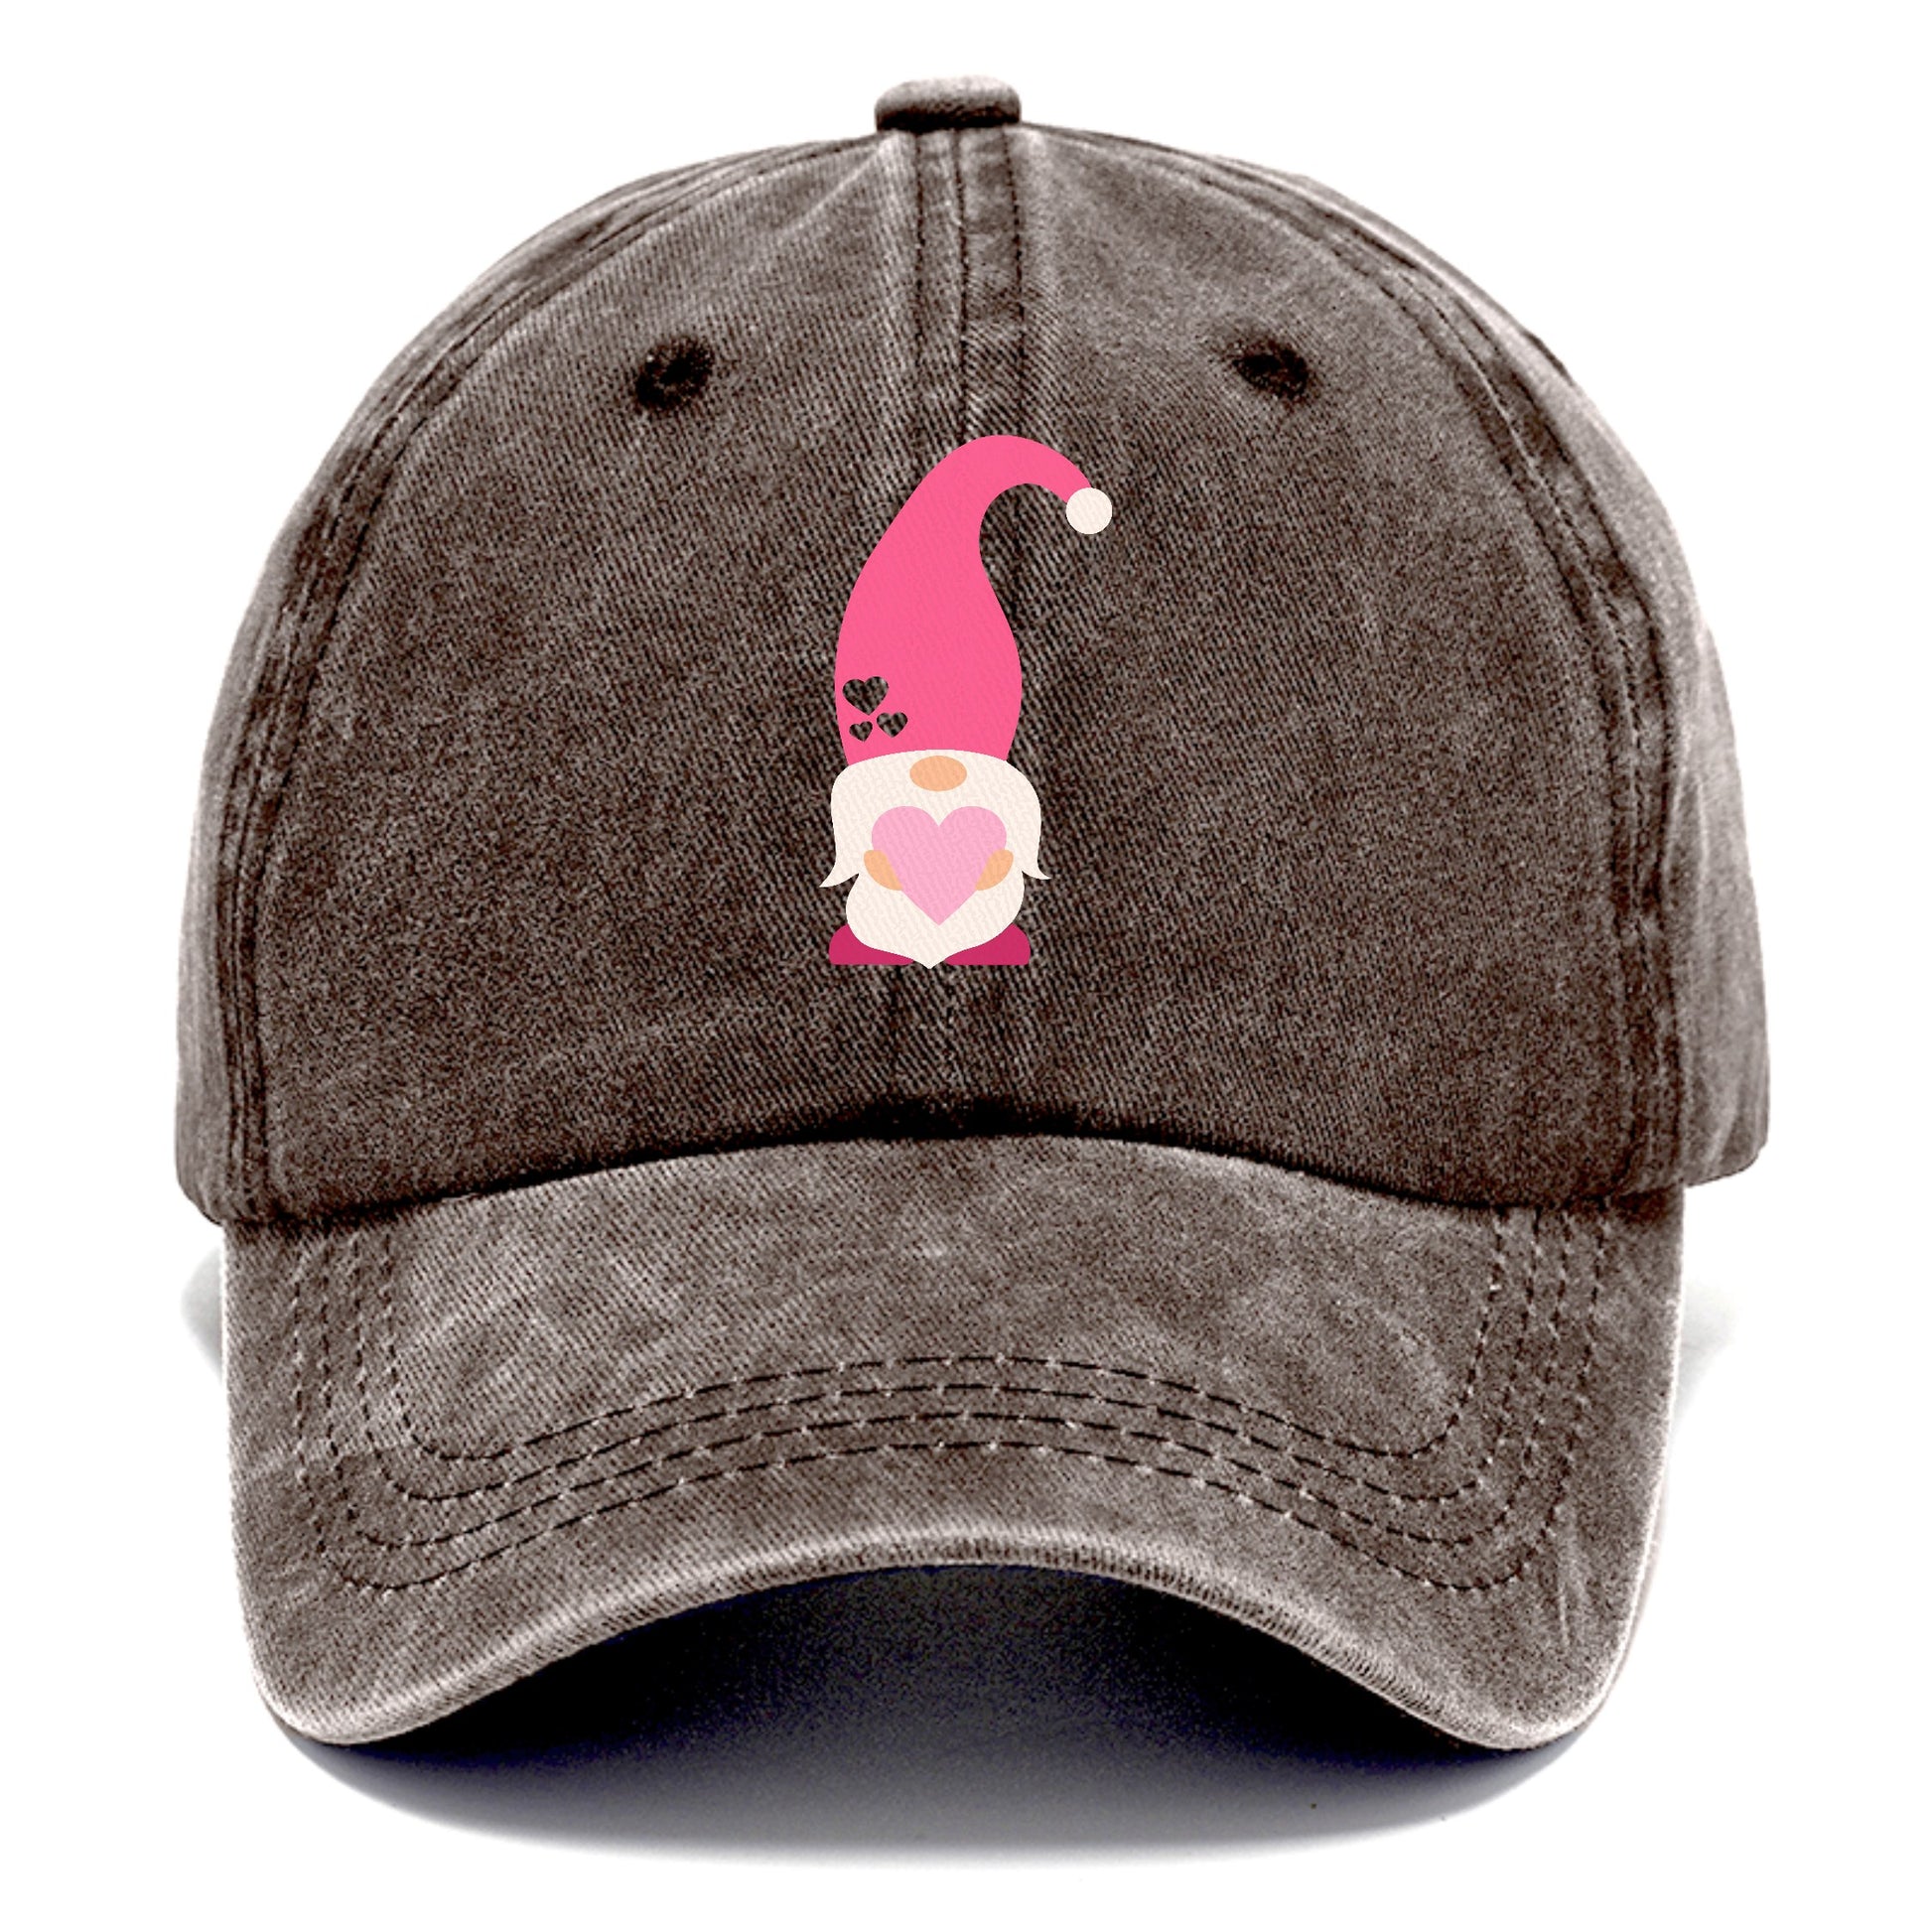 Valentine's dwarf 9 Hat